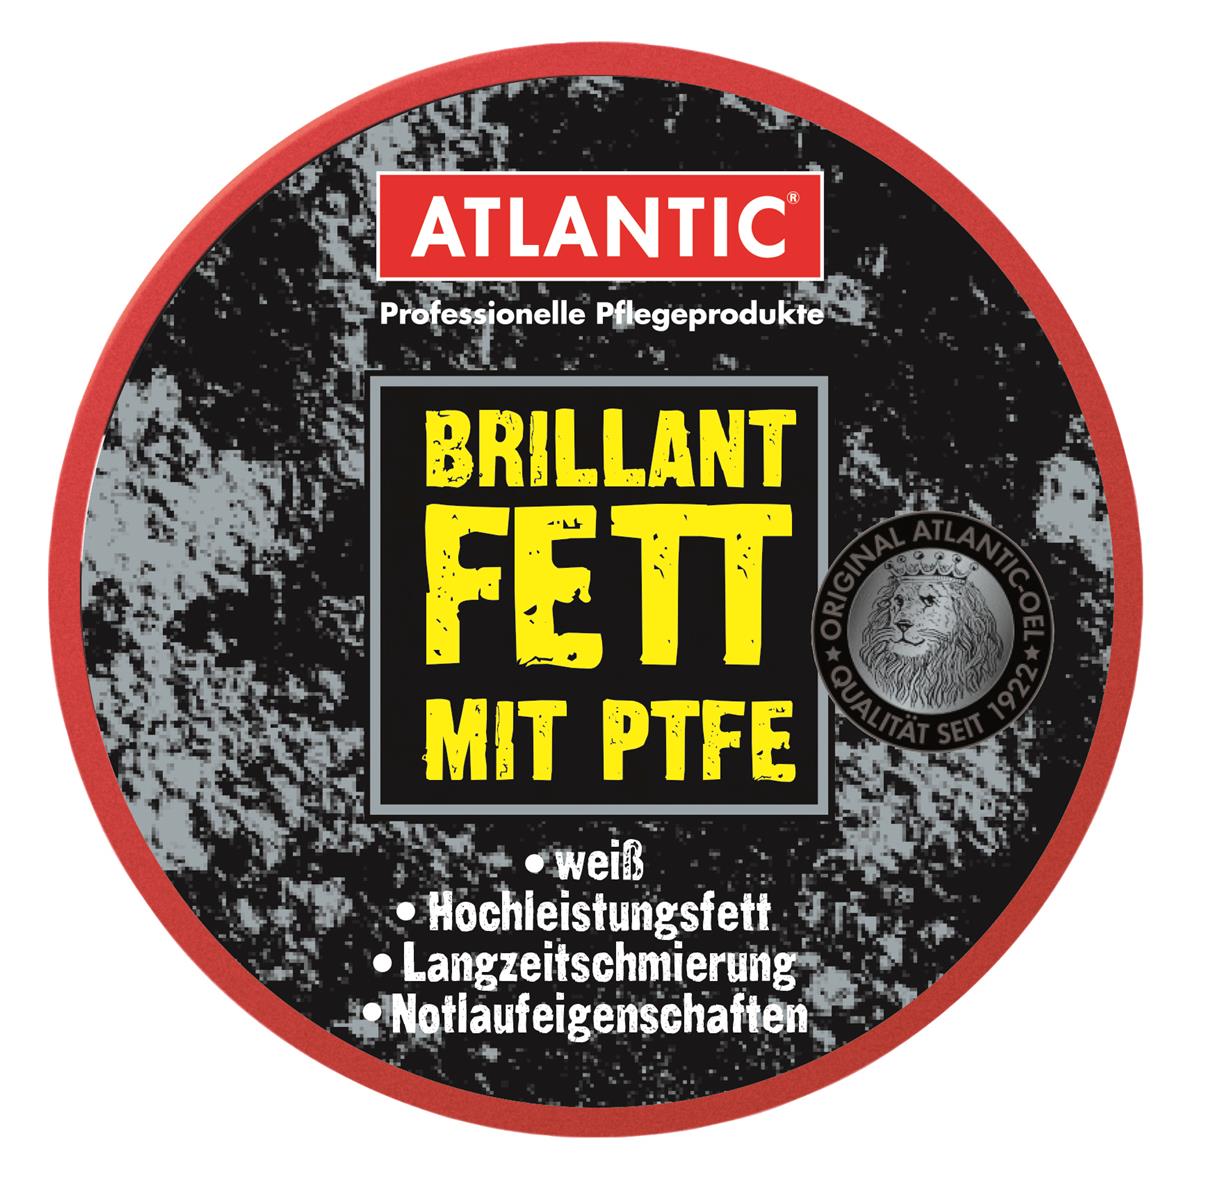 Atlantic weißes Brilliantfett mit PTFE 40 g